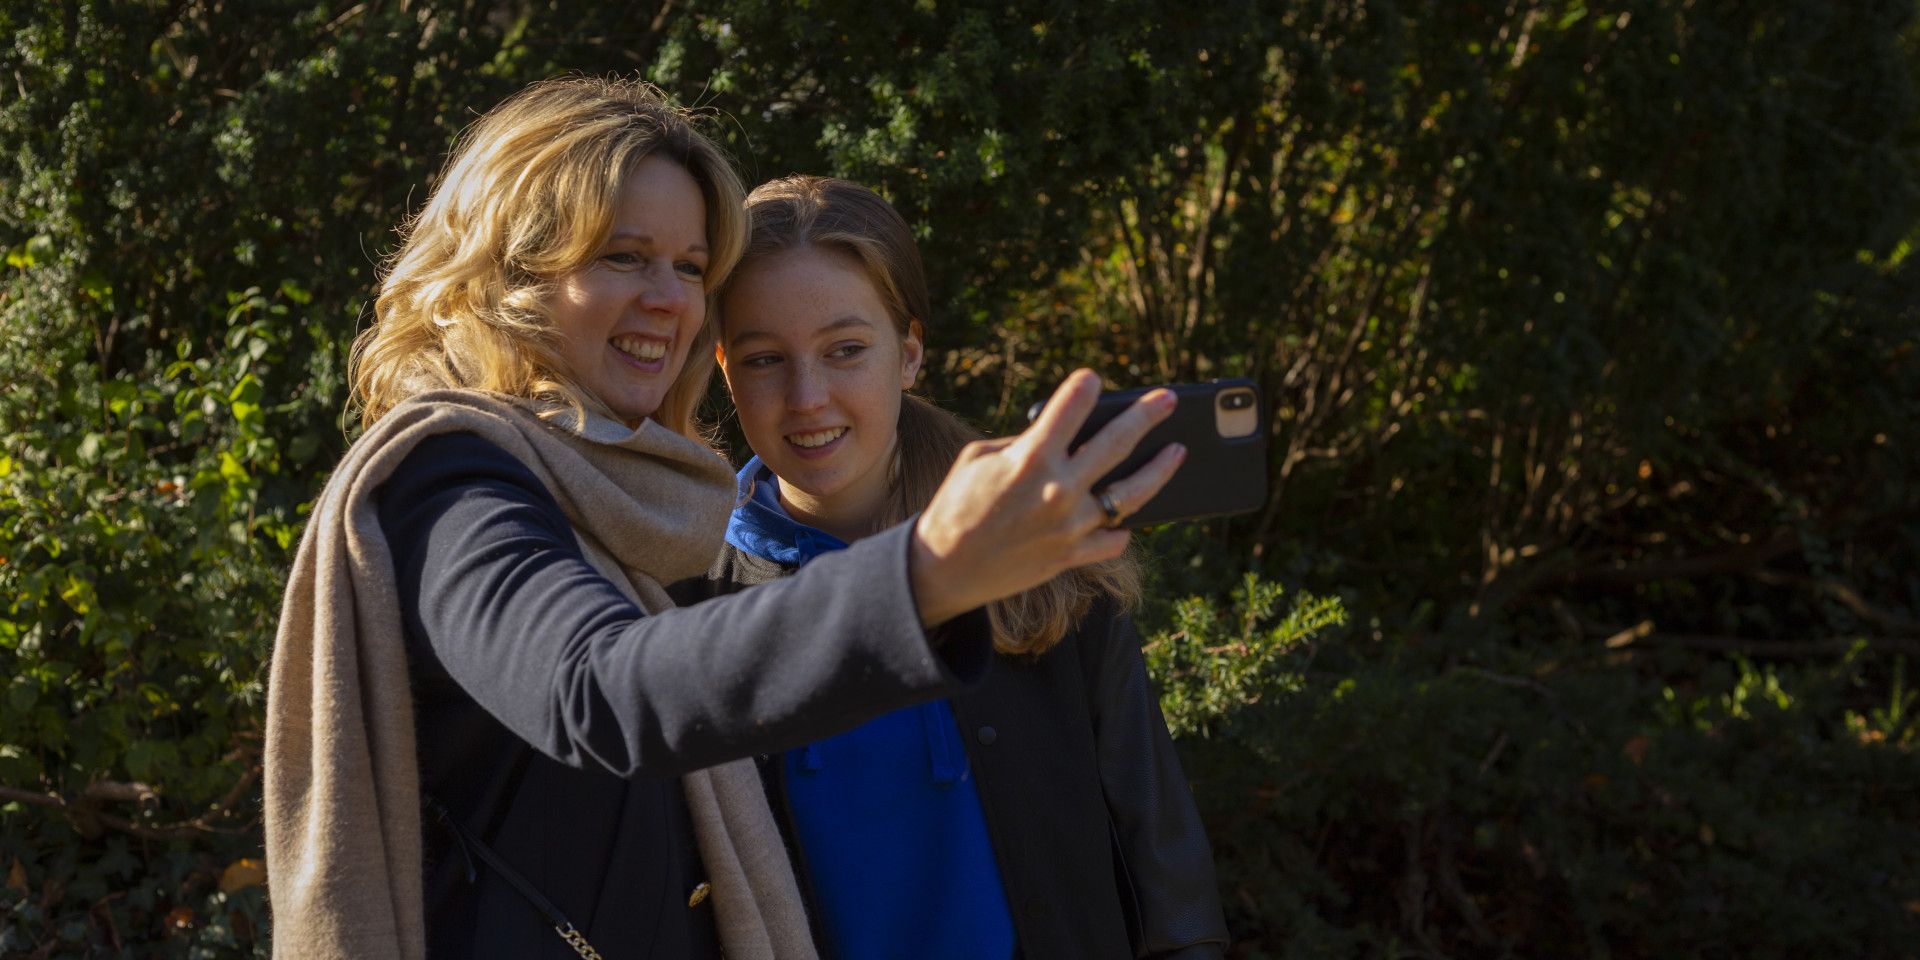 moeder en dochter selfie